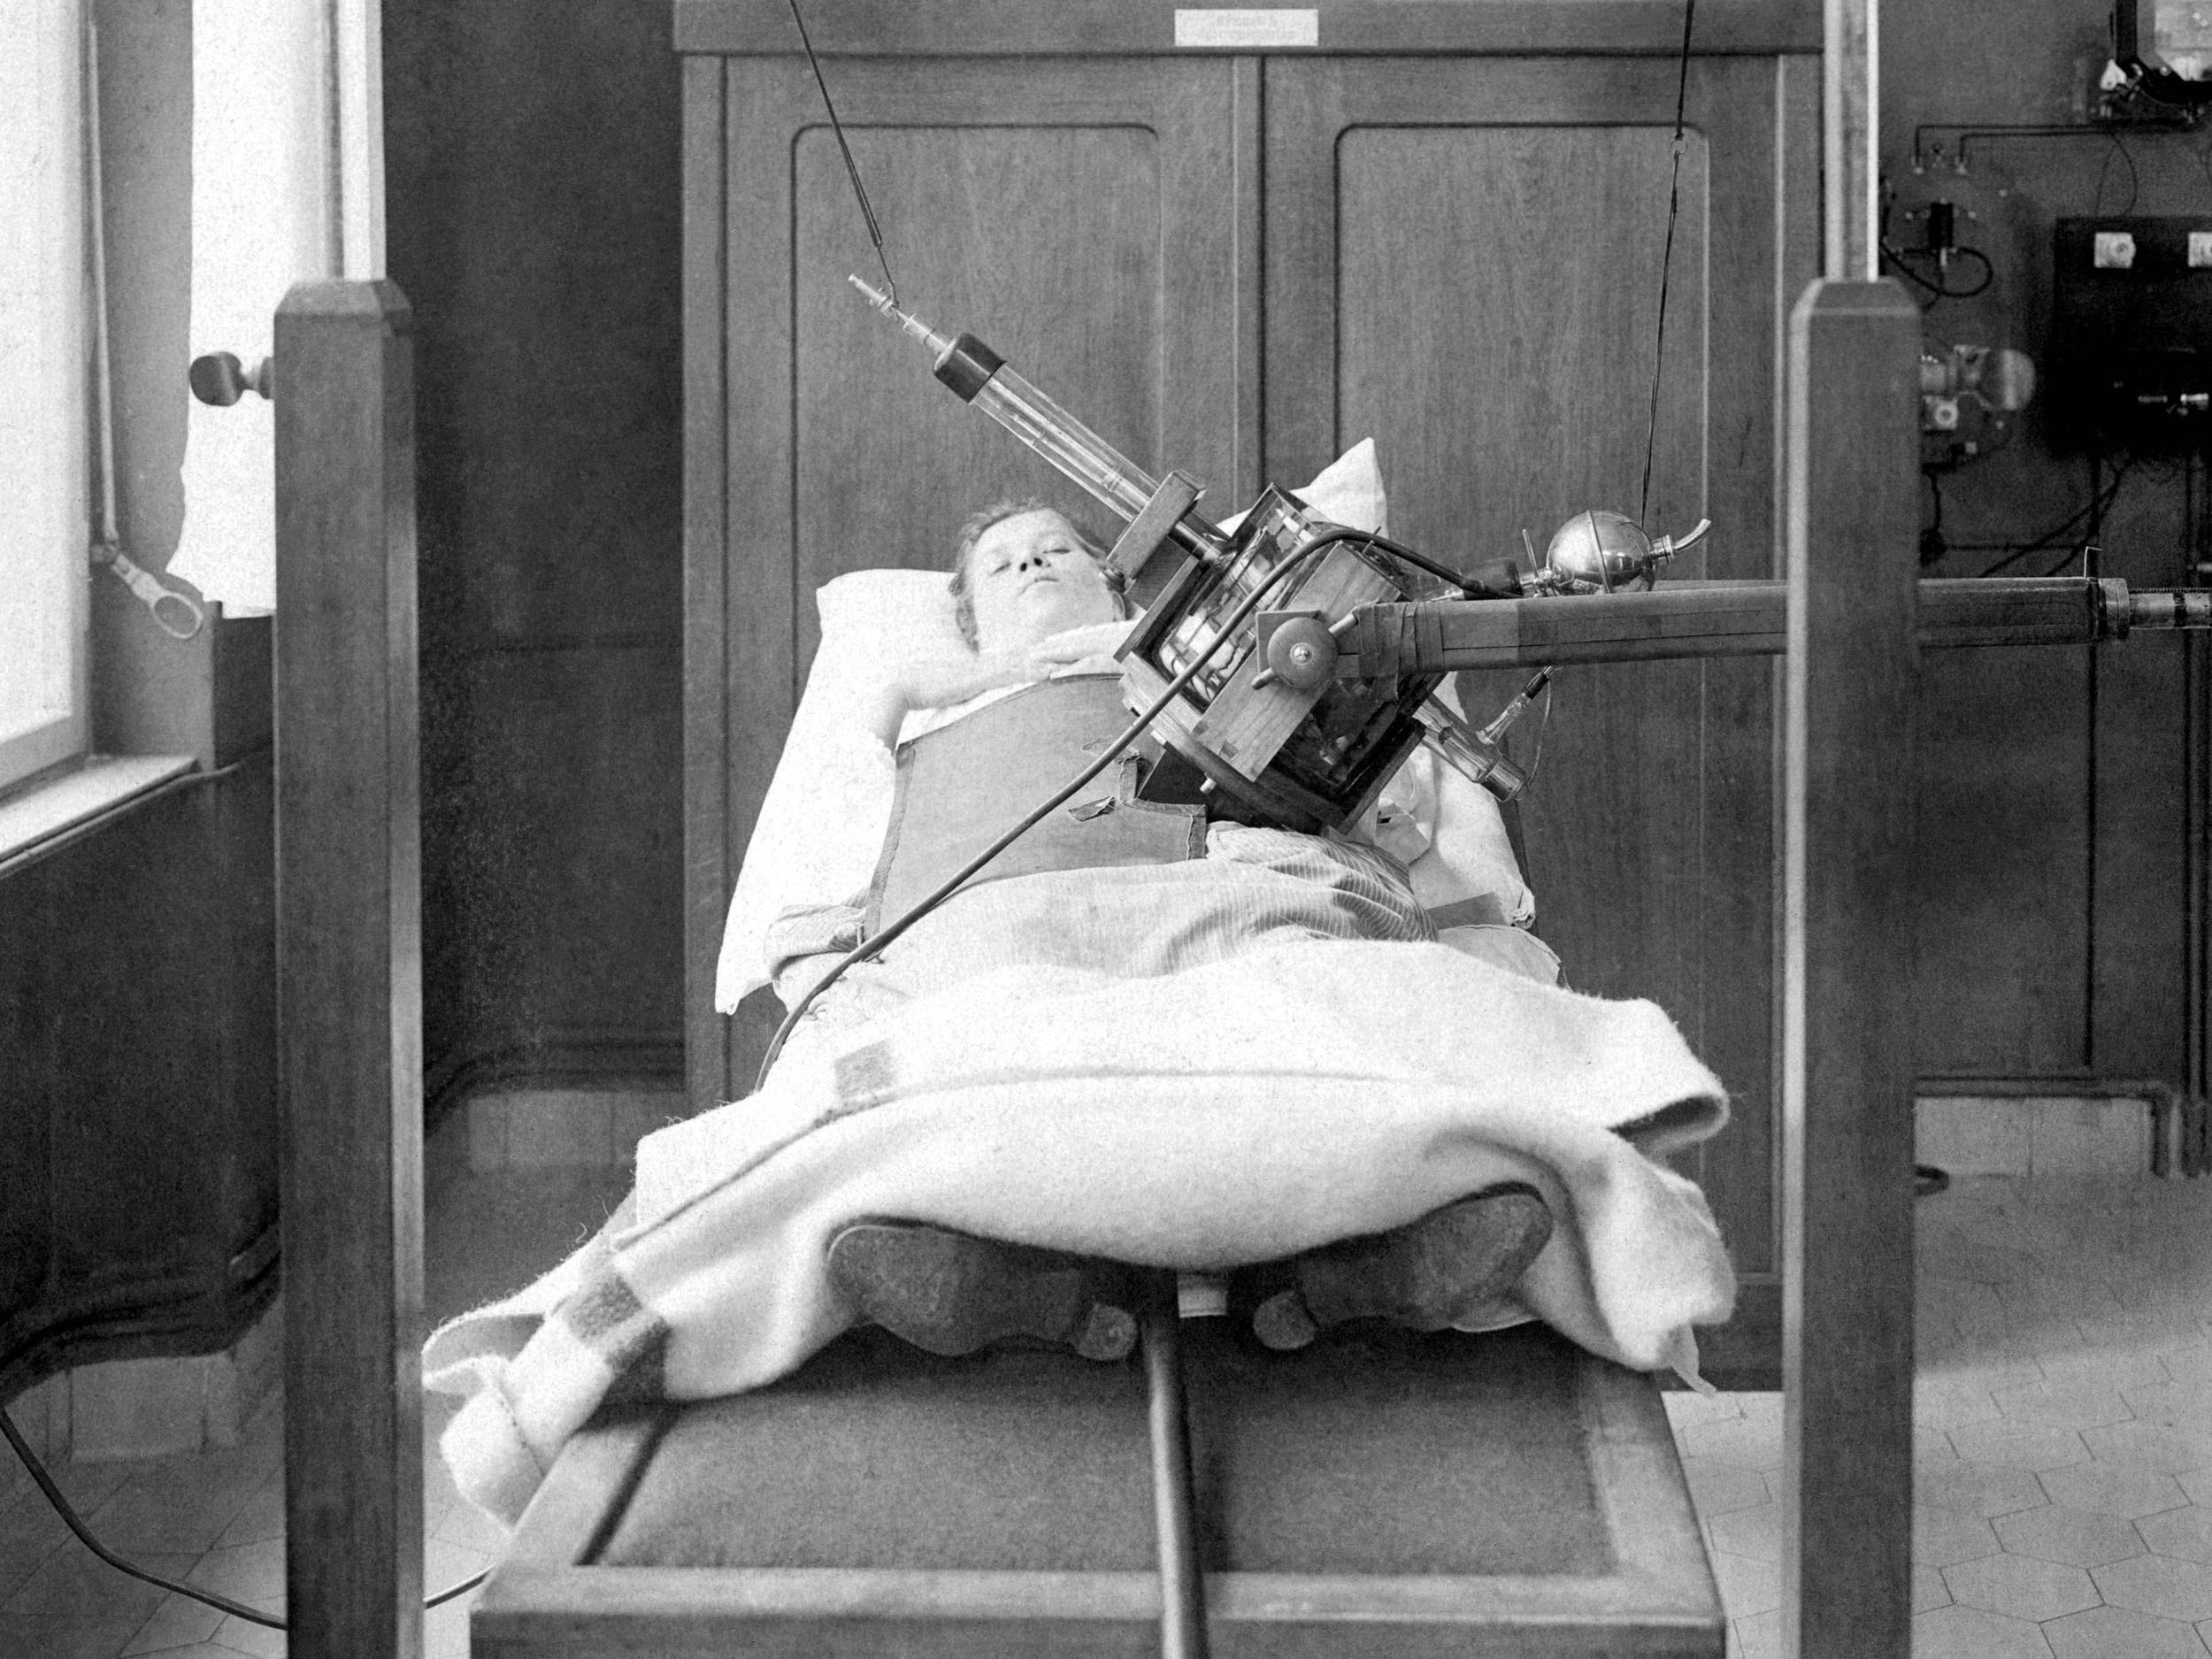 Fotografie, schwarz-weiß, von 1918: Das Foto zeigt eine liegende Frau auf einer Holzliege. Ein Bestrahlungsgerät bestrahlt die linke Seite ihres unteren Leibs.   Die rechte Seite ist abgedeckt. Im Hintergrund sieht man einen Holzschrank und verschiedene Apparaturen.